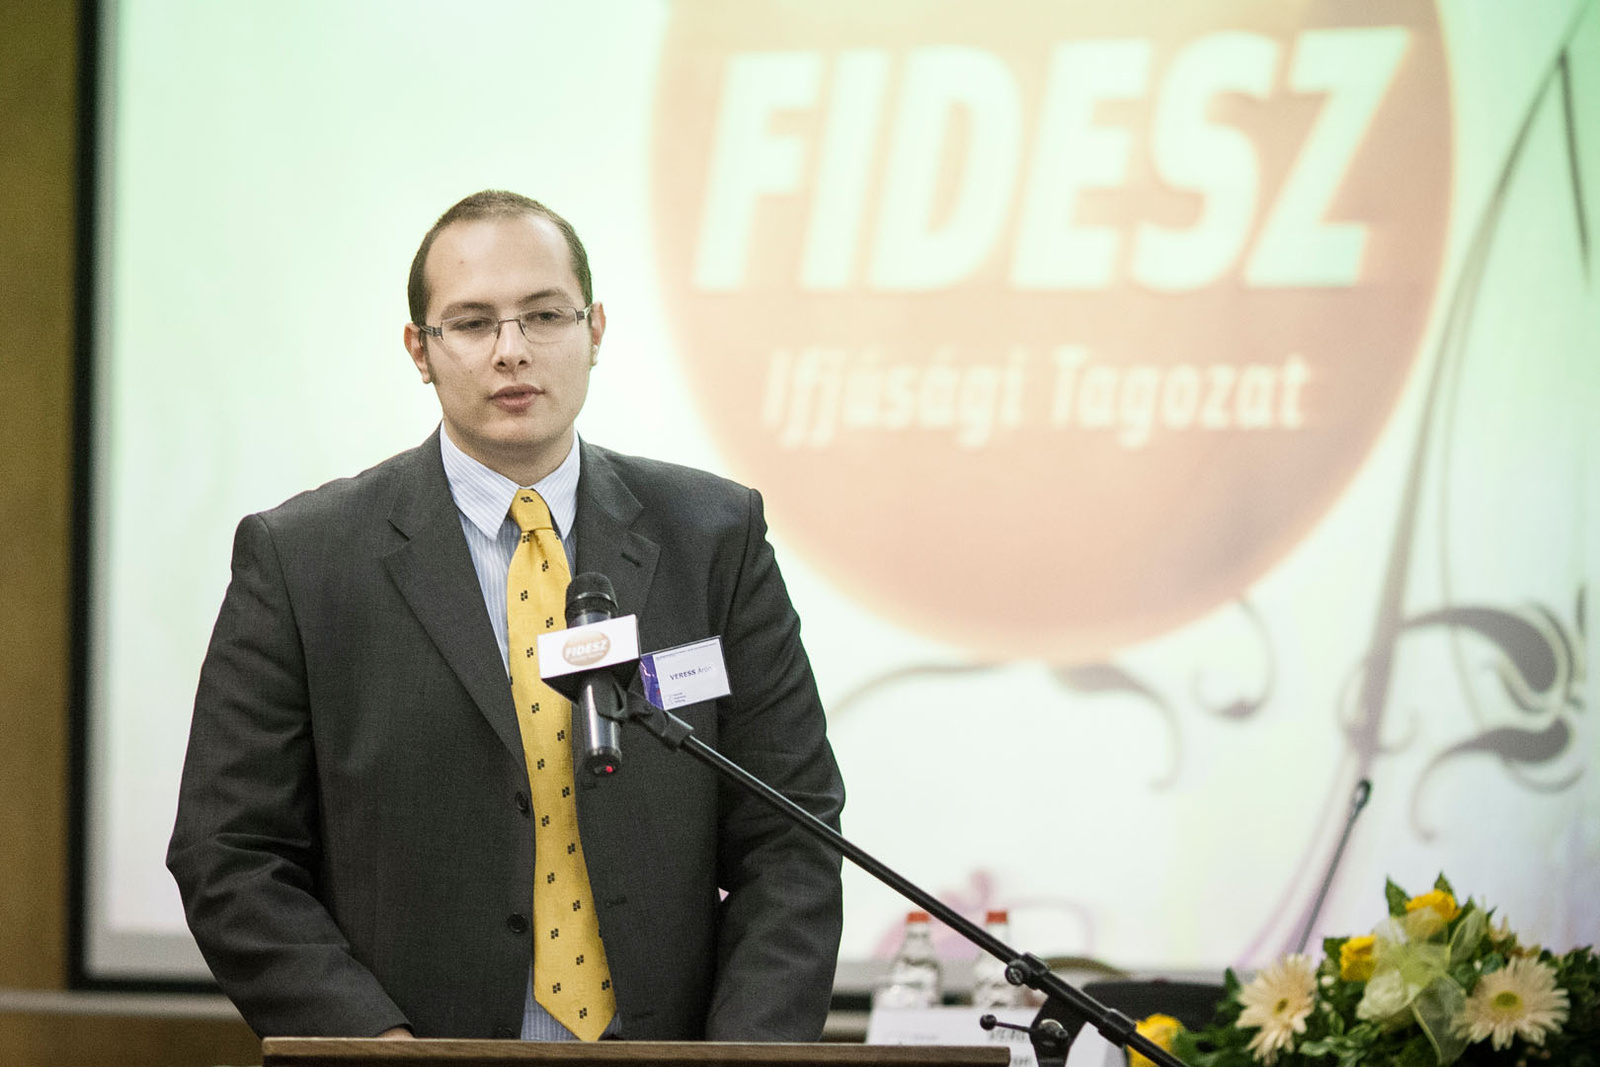 Letöltendő börtön vár a Fidesz Ifjúsági Tagozat egykori elnökére